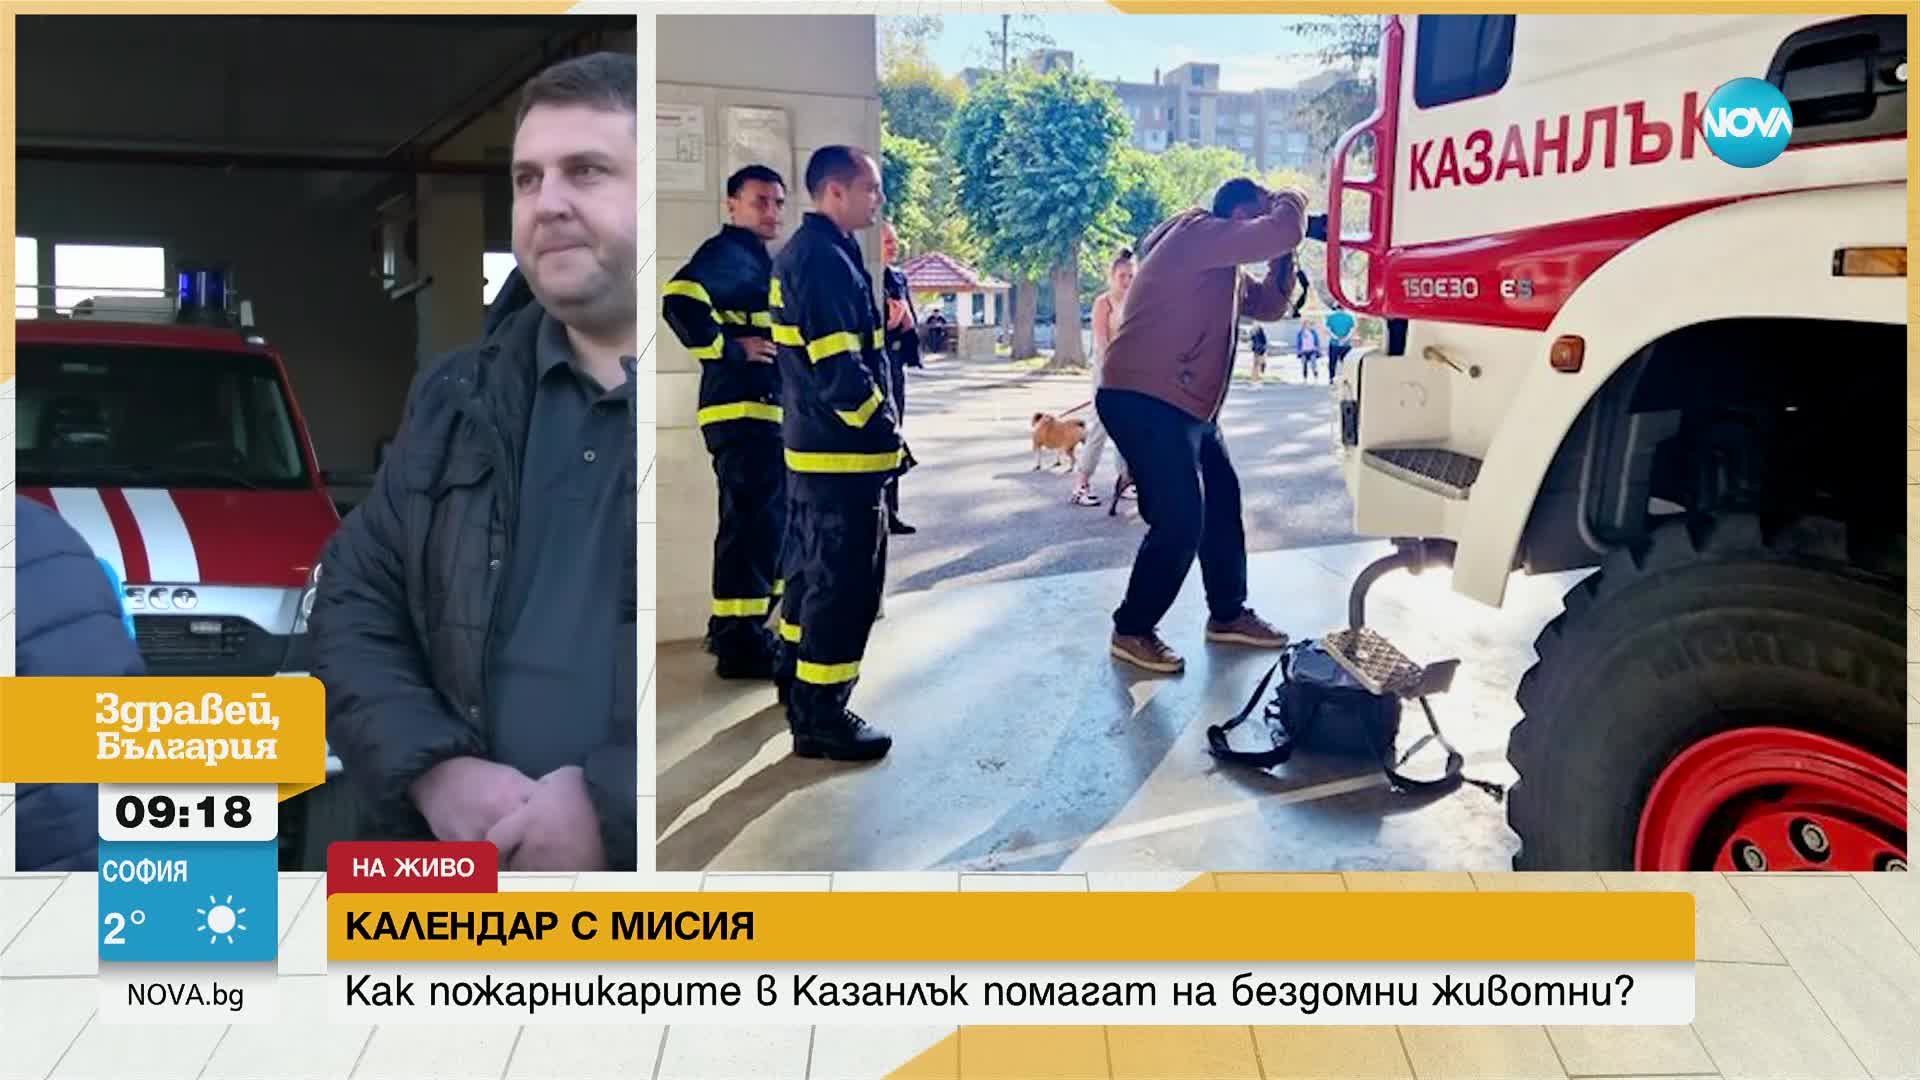 Пожарникари от Казанлък позираха с животни за специален календар